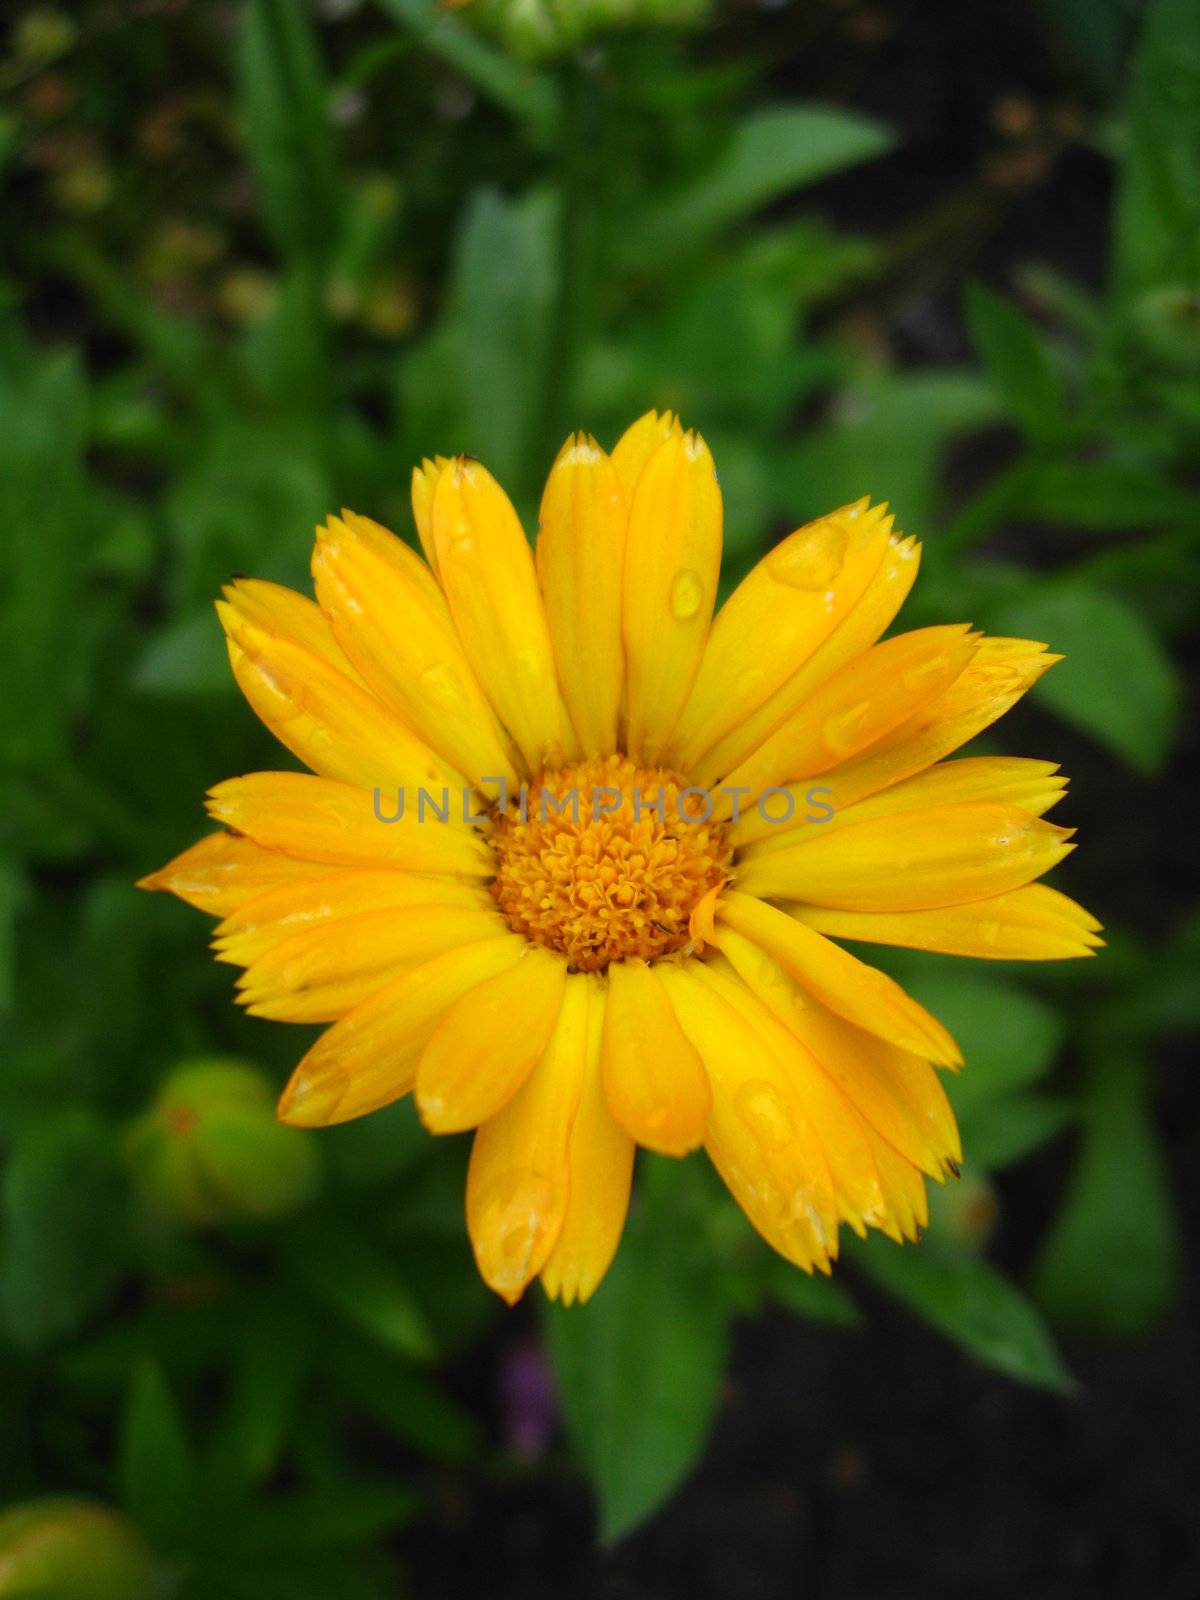 beautiful flower of yellow calendula by alexmak